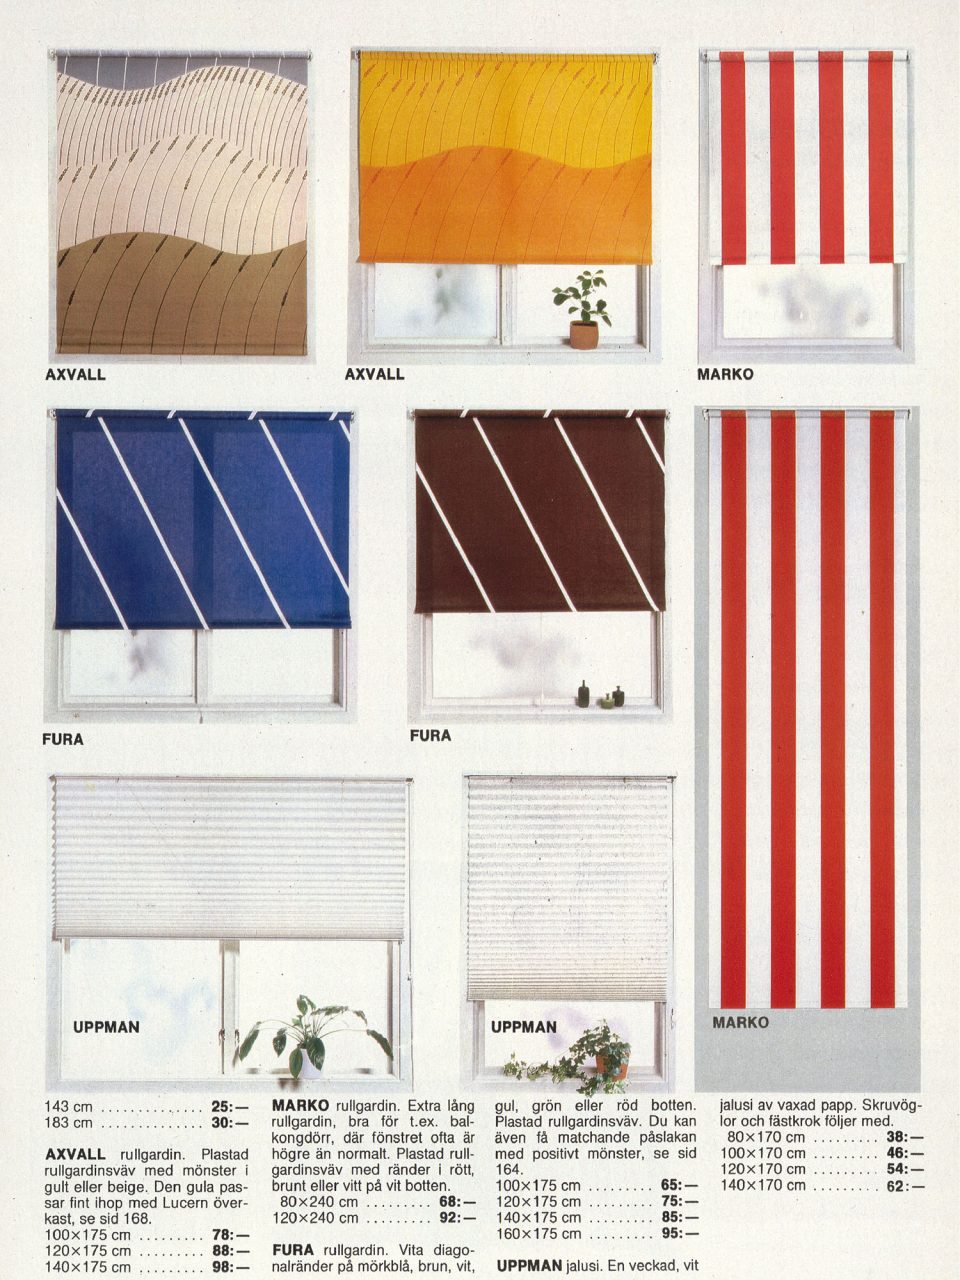 Sida i IKEA katalogen 1980 med rullgardiner i olika mönster som en solnedgång, ett vajande fält eller enkla ränder.